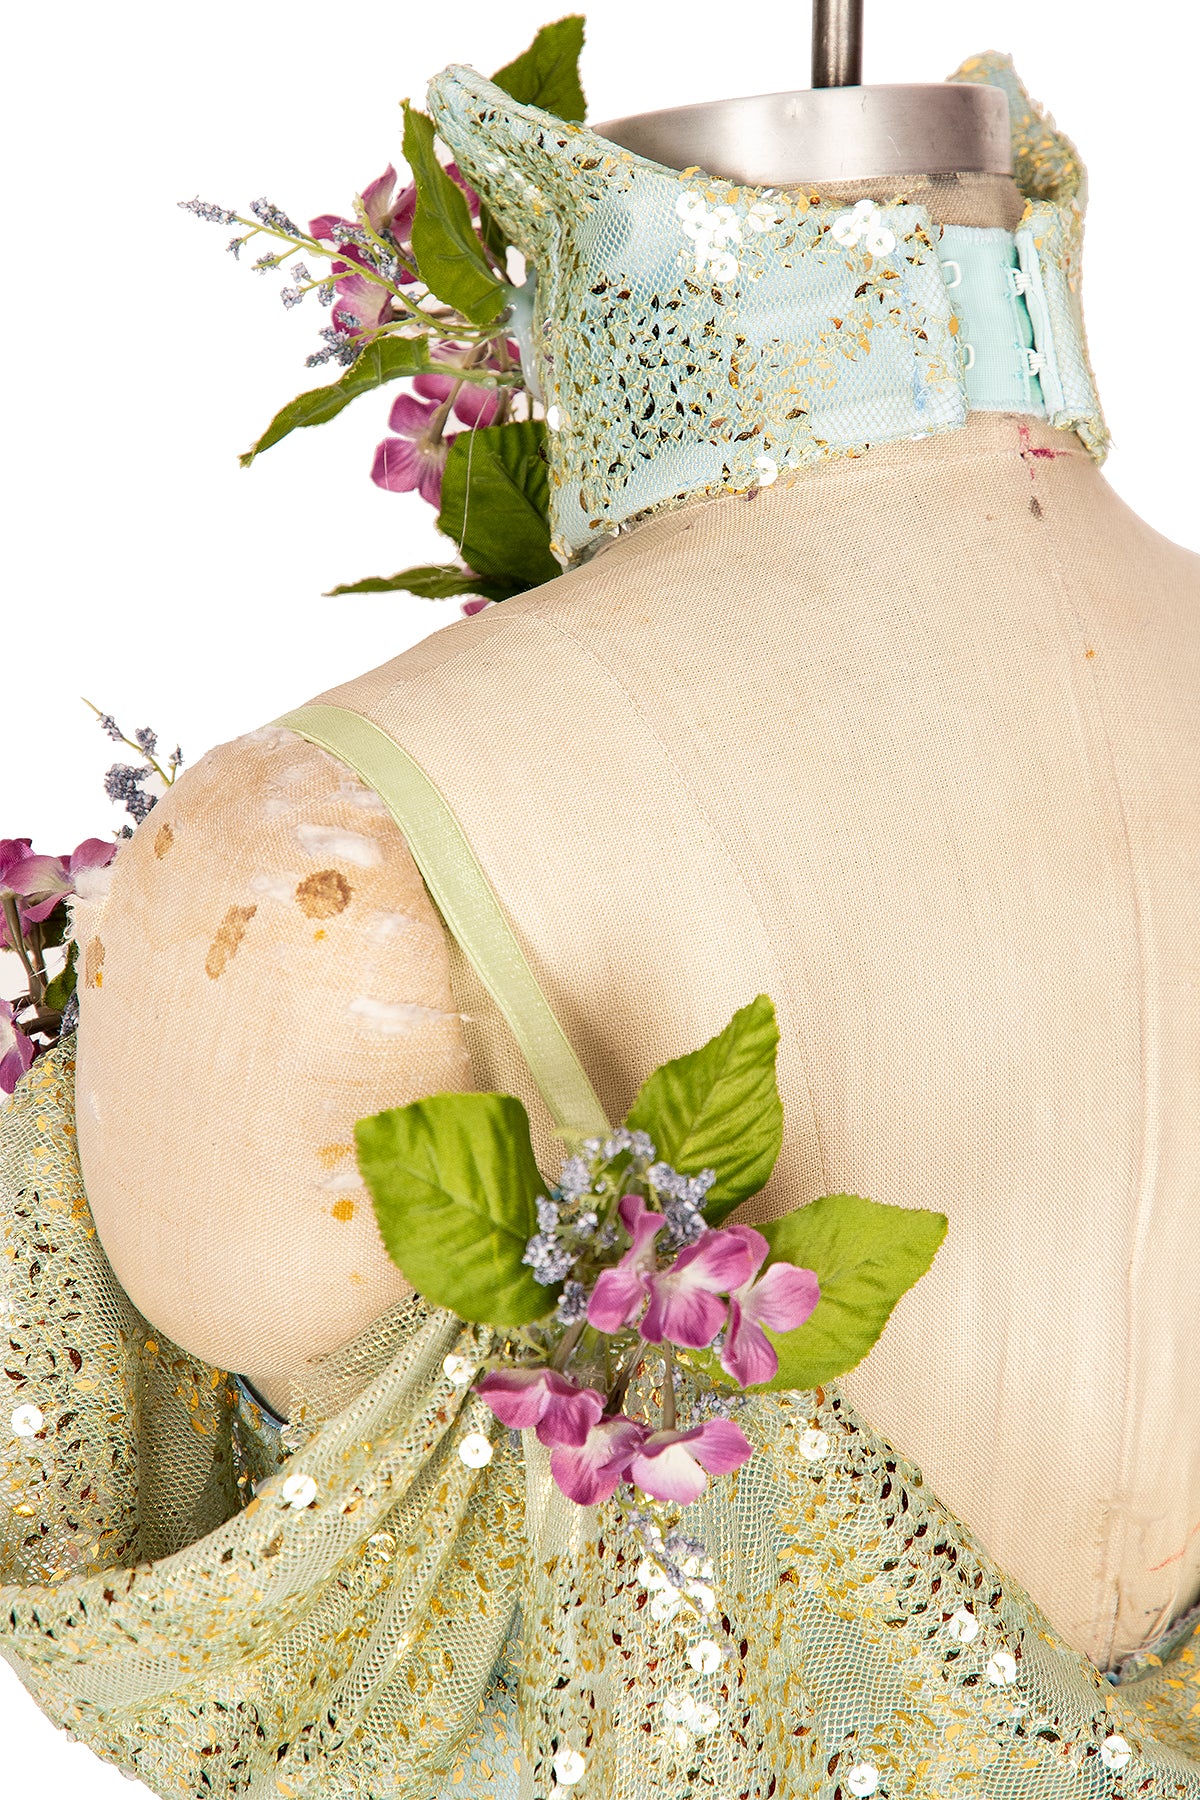 Fairie Queen Dress